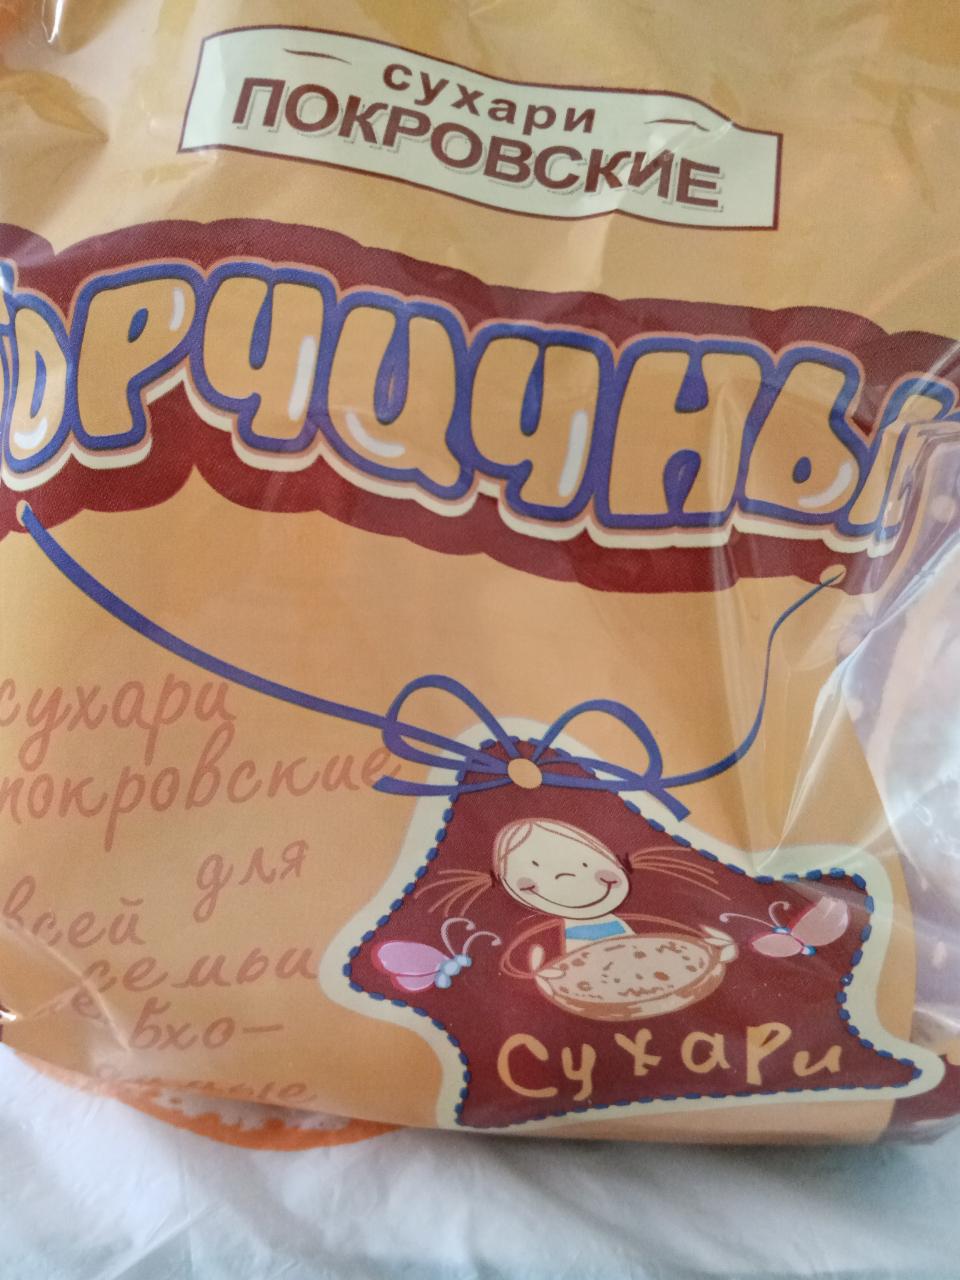 Фото - Сухари горчичные в упаковке Покровские